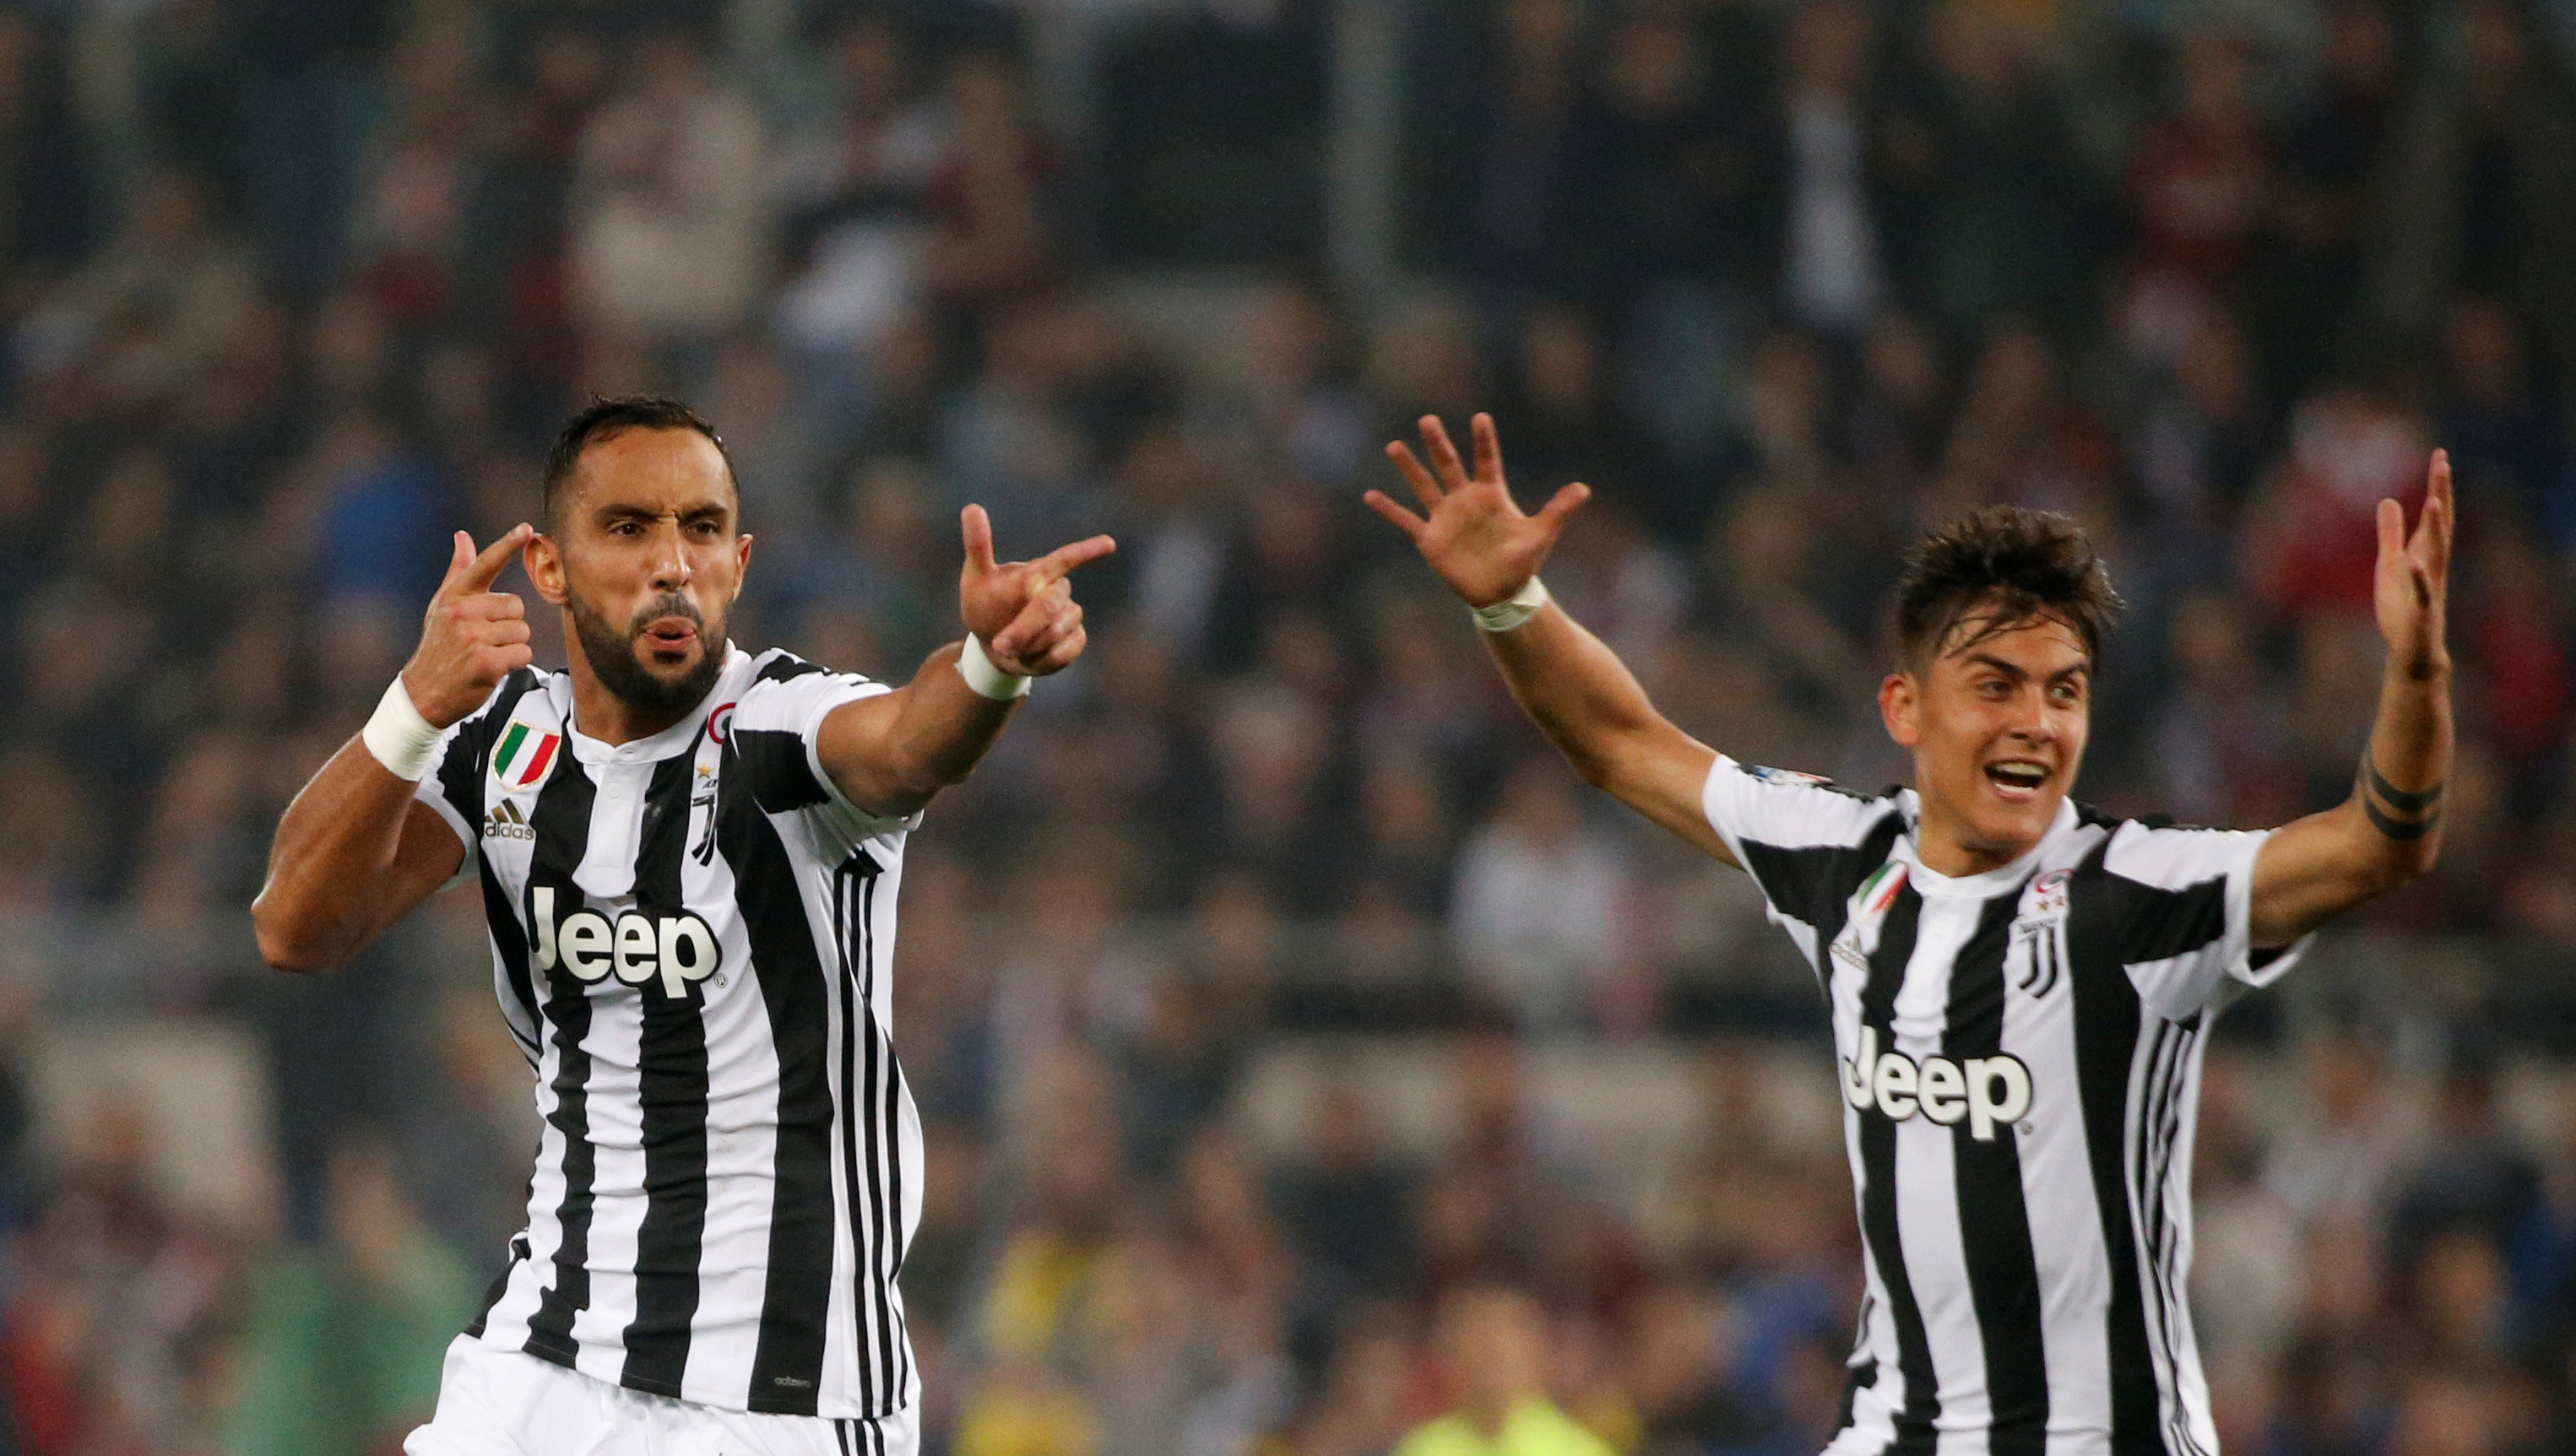 Niềm vui của các cầu thủ Juventus sau khi ghi bàn vào lưới Milan. Ảnh: REUTERS